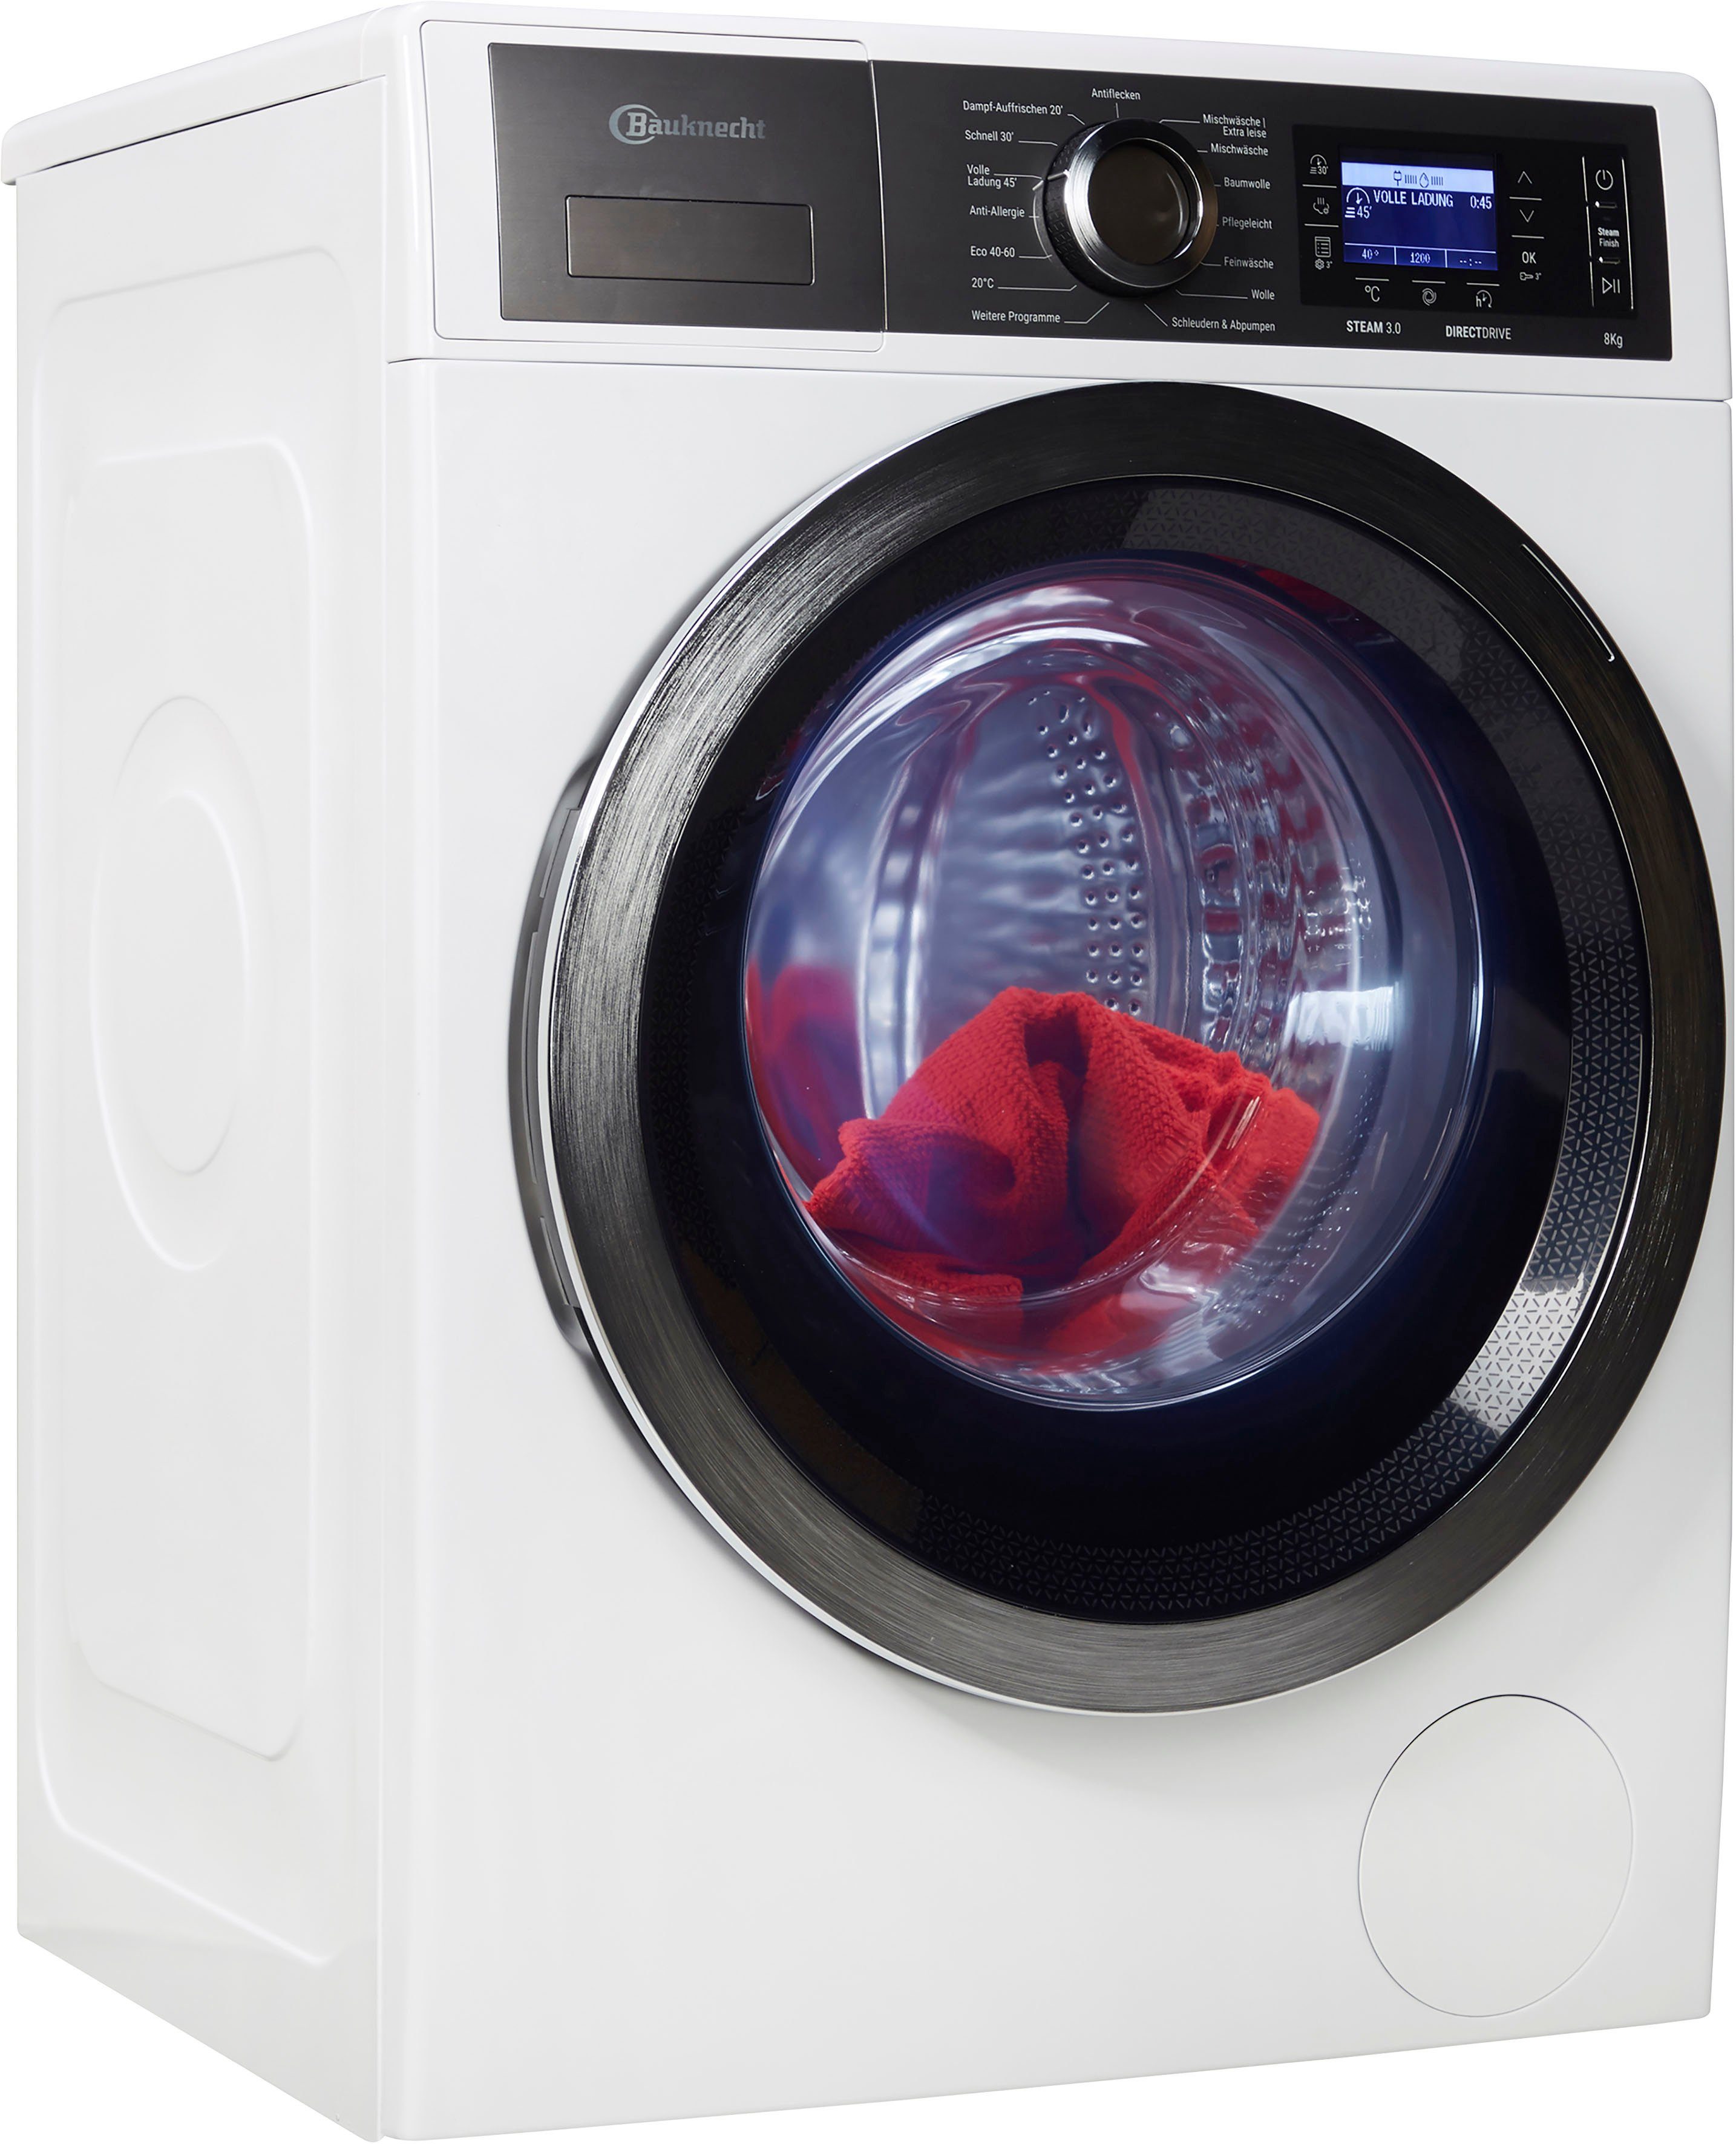 BAUKNECHT Waschmaschine B6 W845WB DE, 8 kg, 1400 U/min online kaufen | OTTO